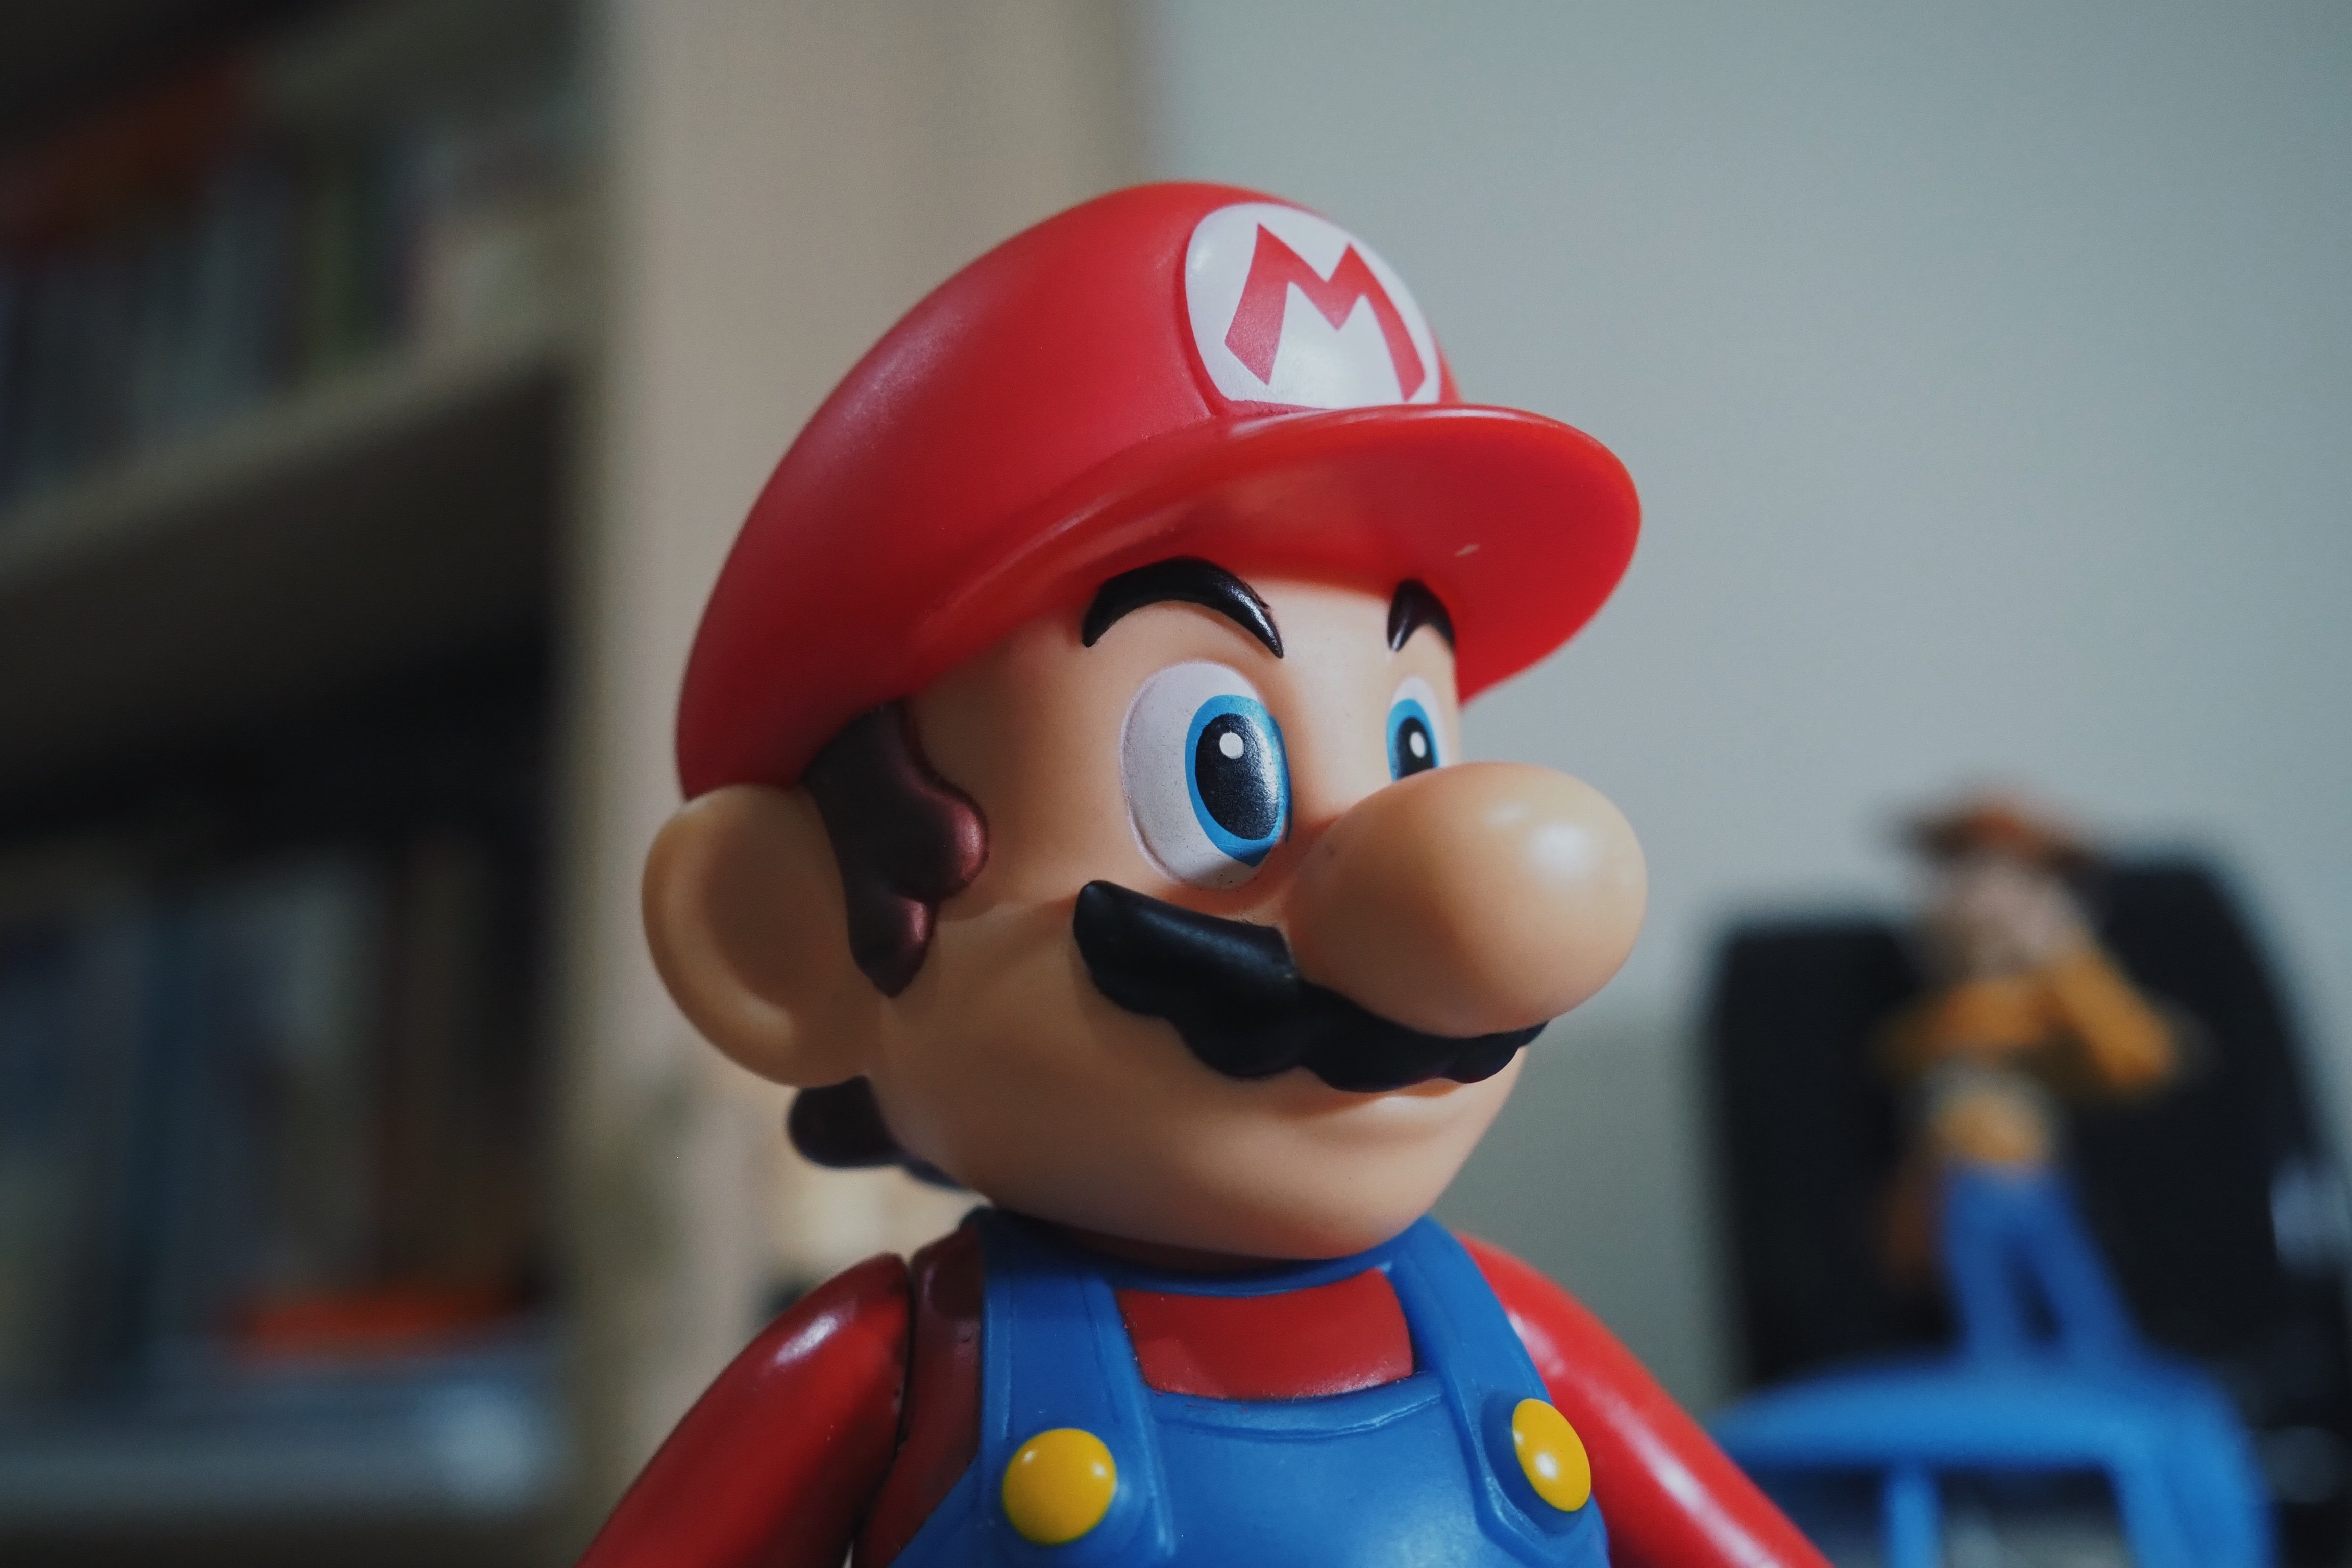 Nintendo anunció descuentos en varios juegos de la franquicia para los próximos días. (Unsplash)